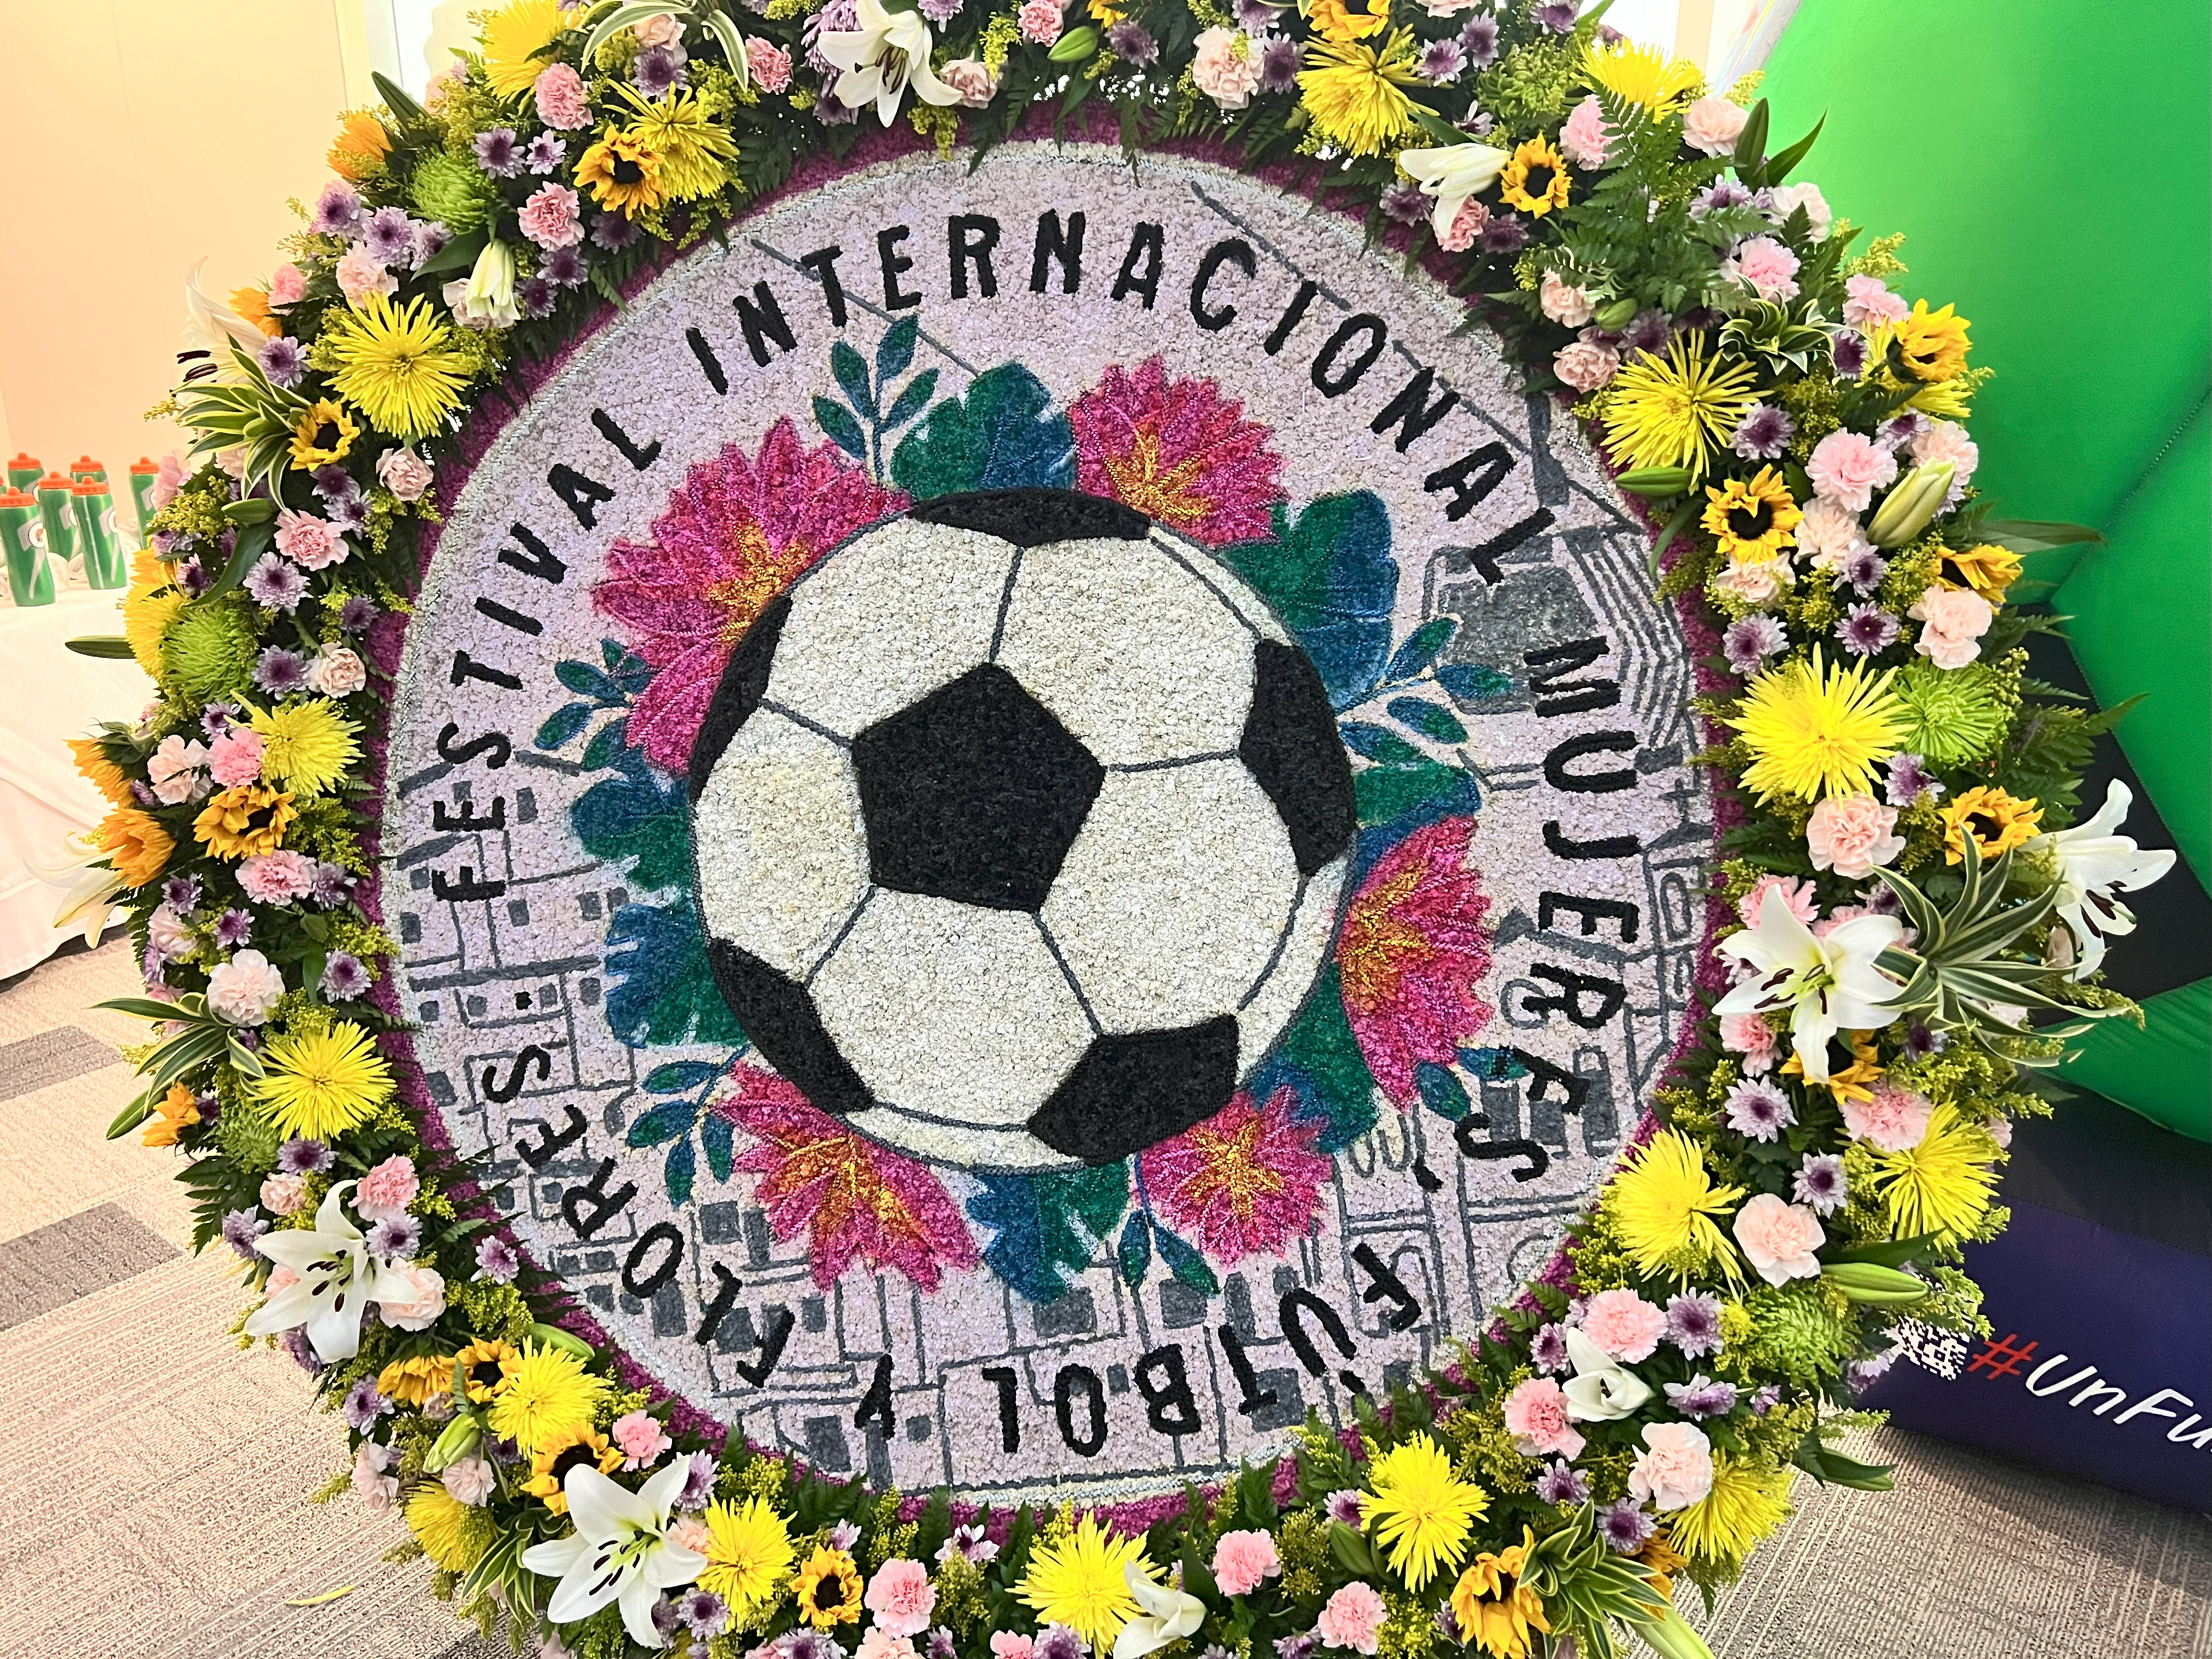 Conozca el torneo femenino “Mujeres, Fútbol y Flores” que se realiza en plena Feria